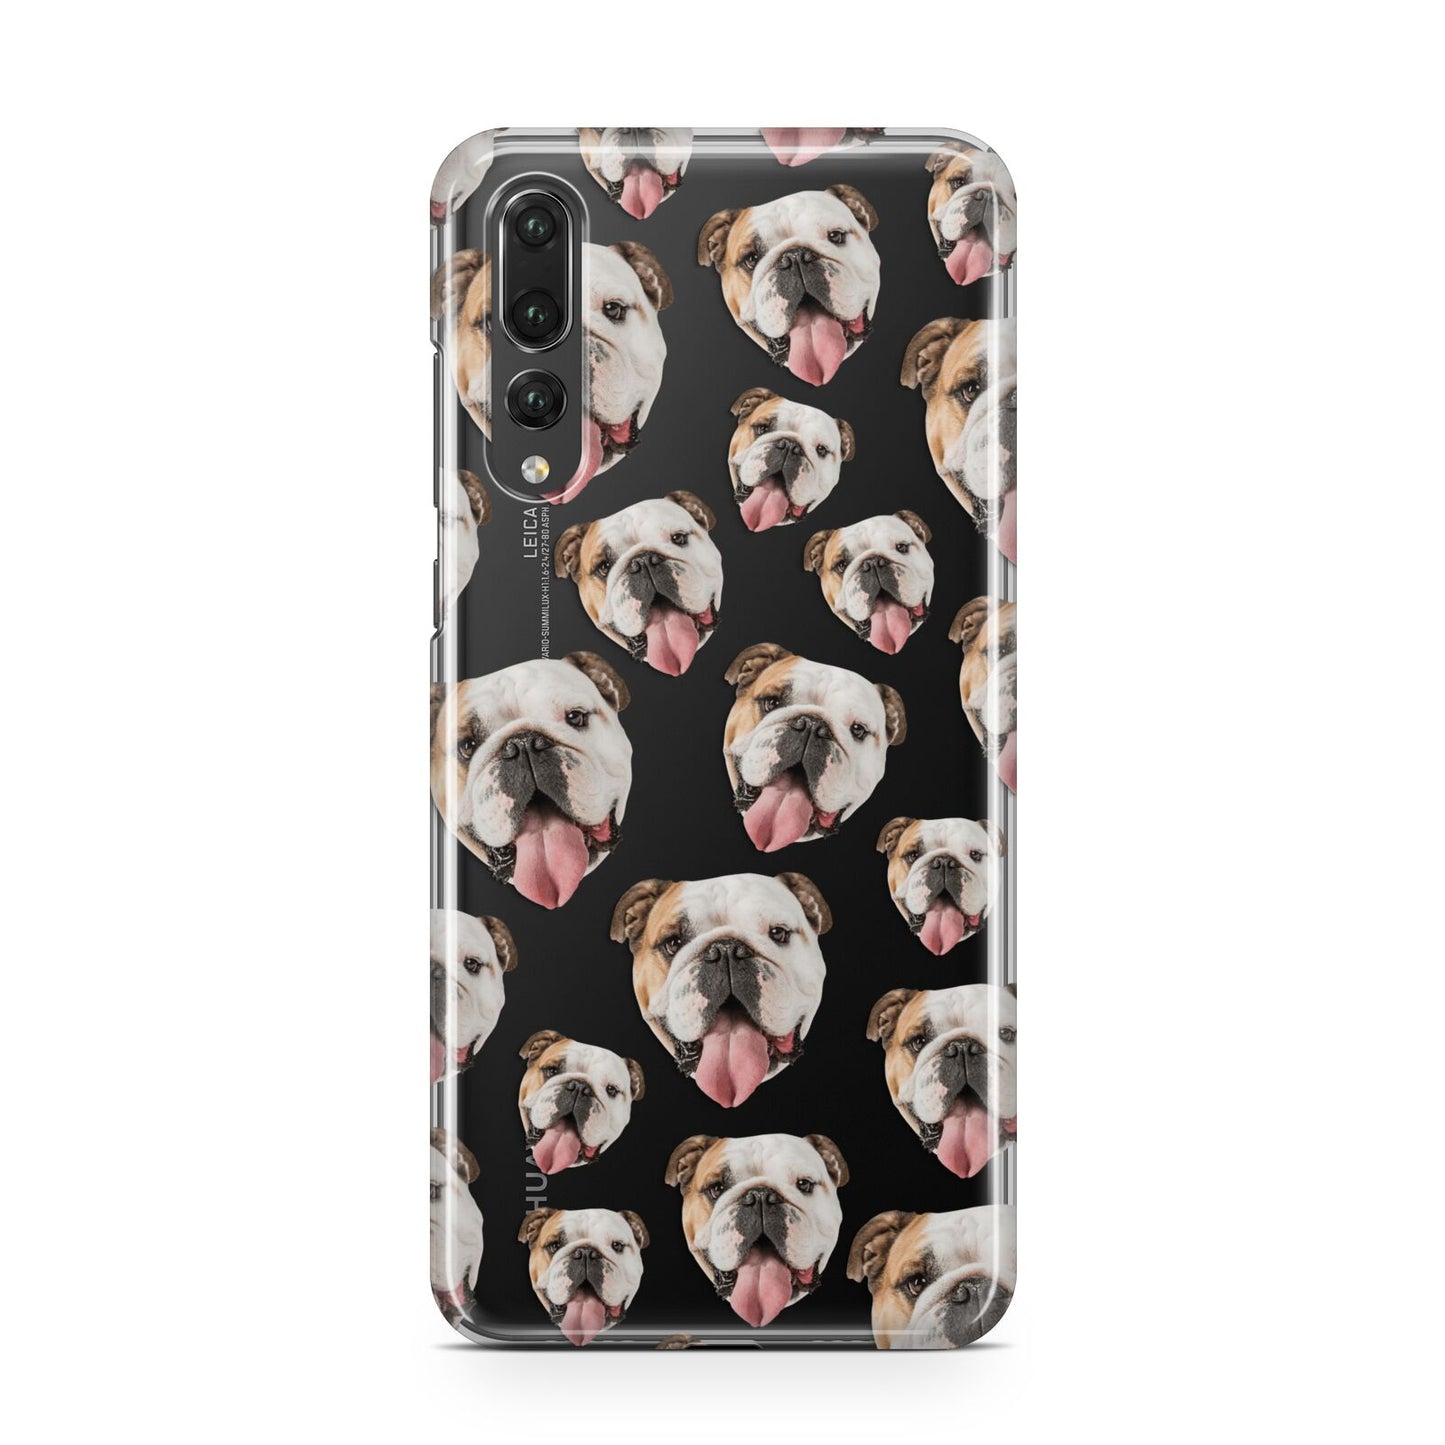 Dog Photo Face Huawei P20 Pro Phone Case